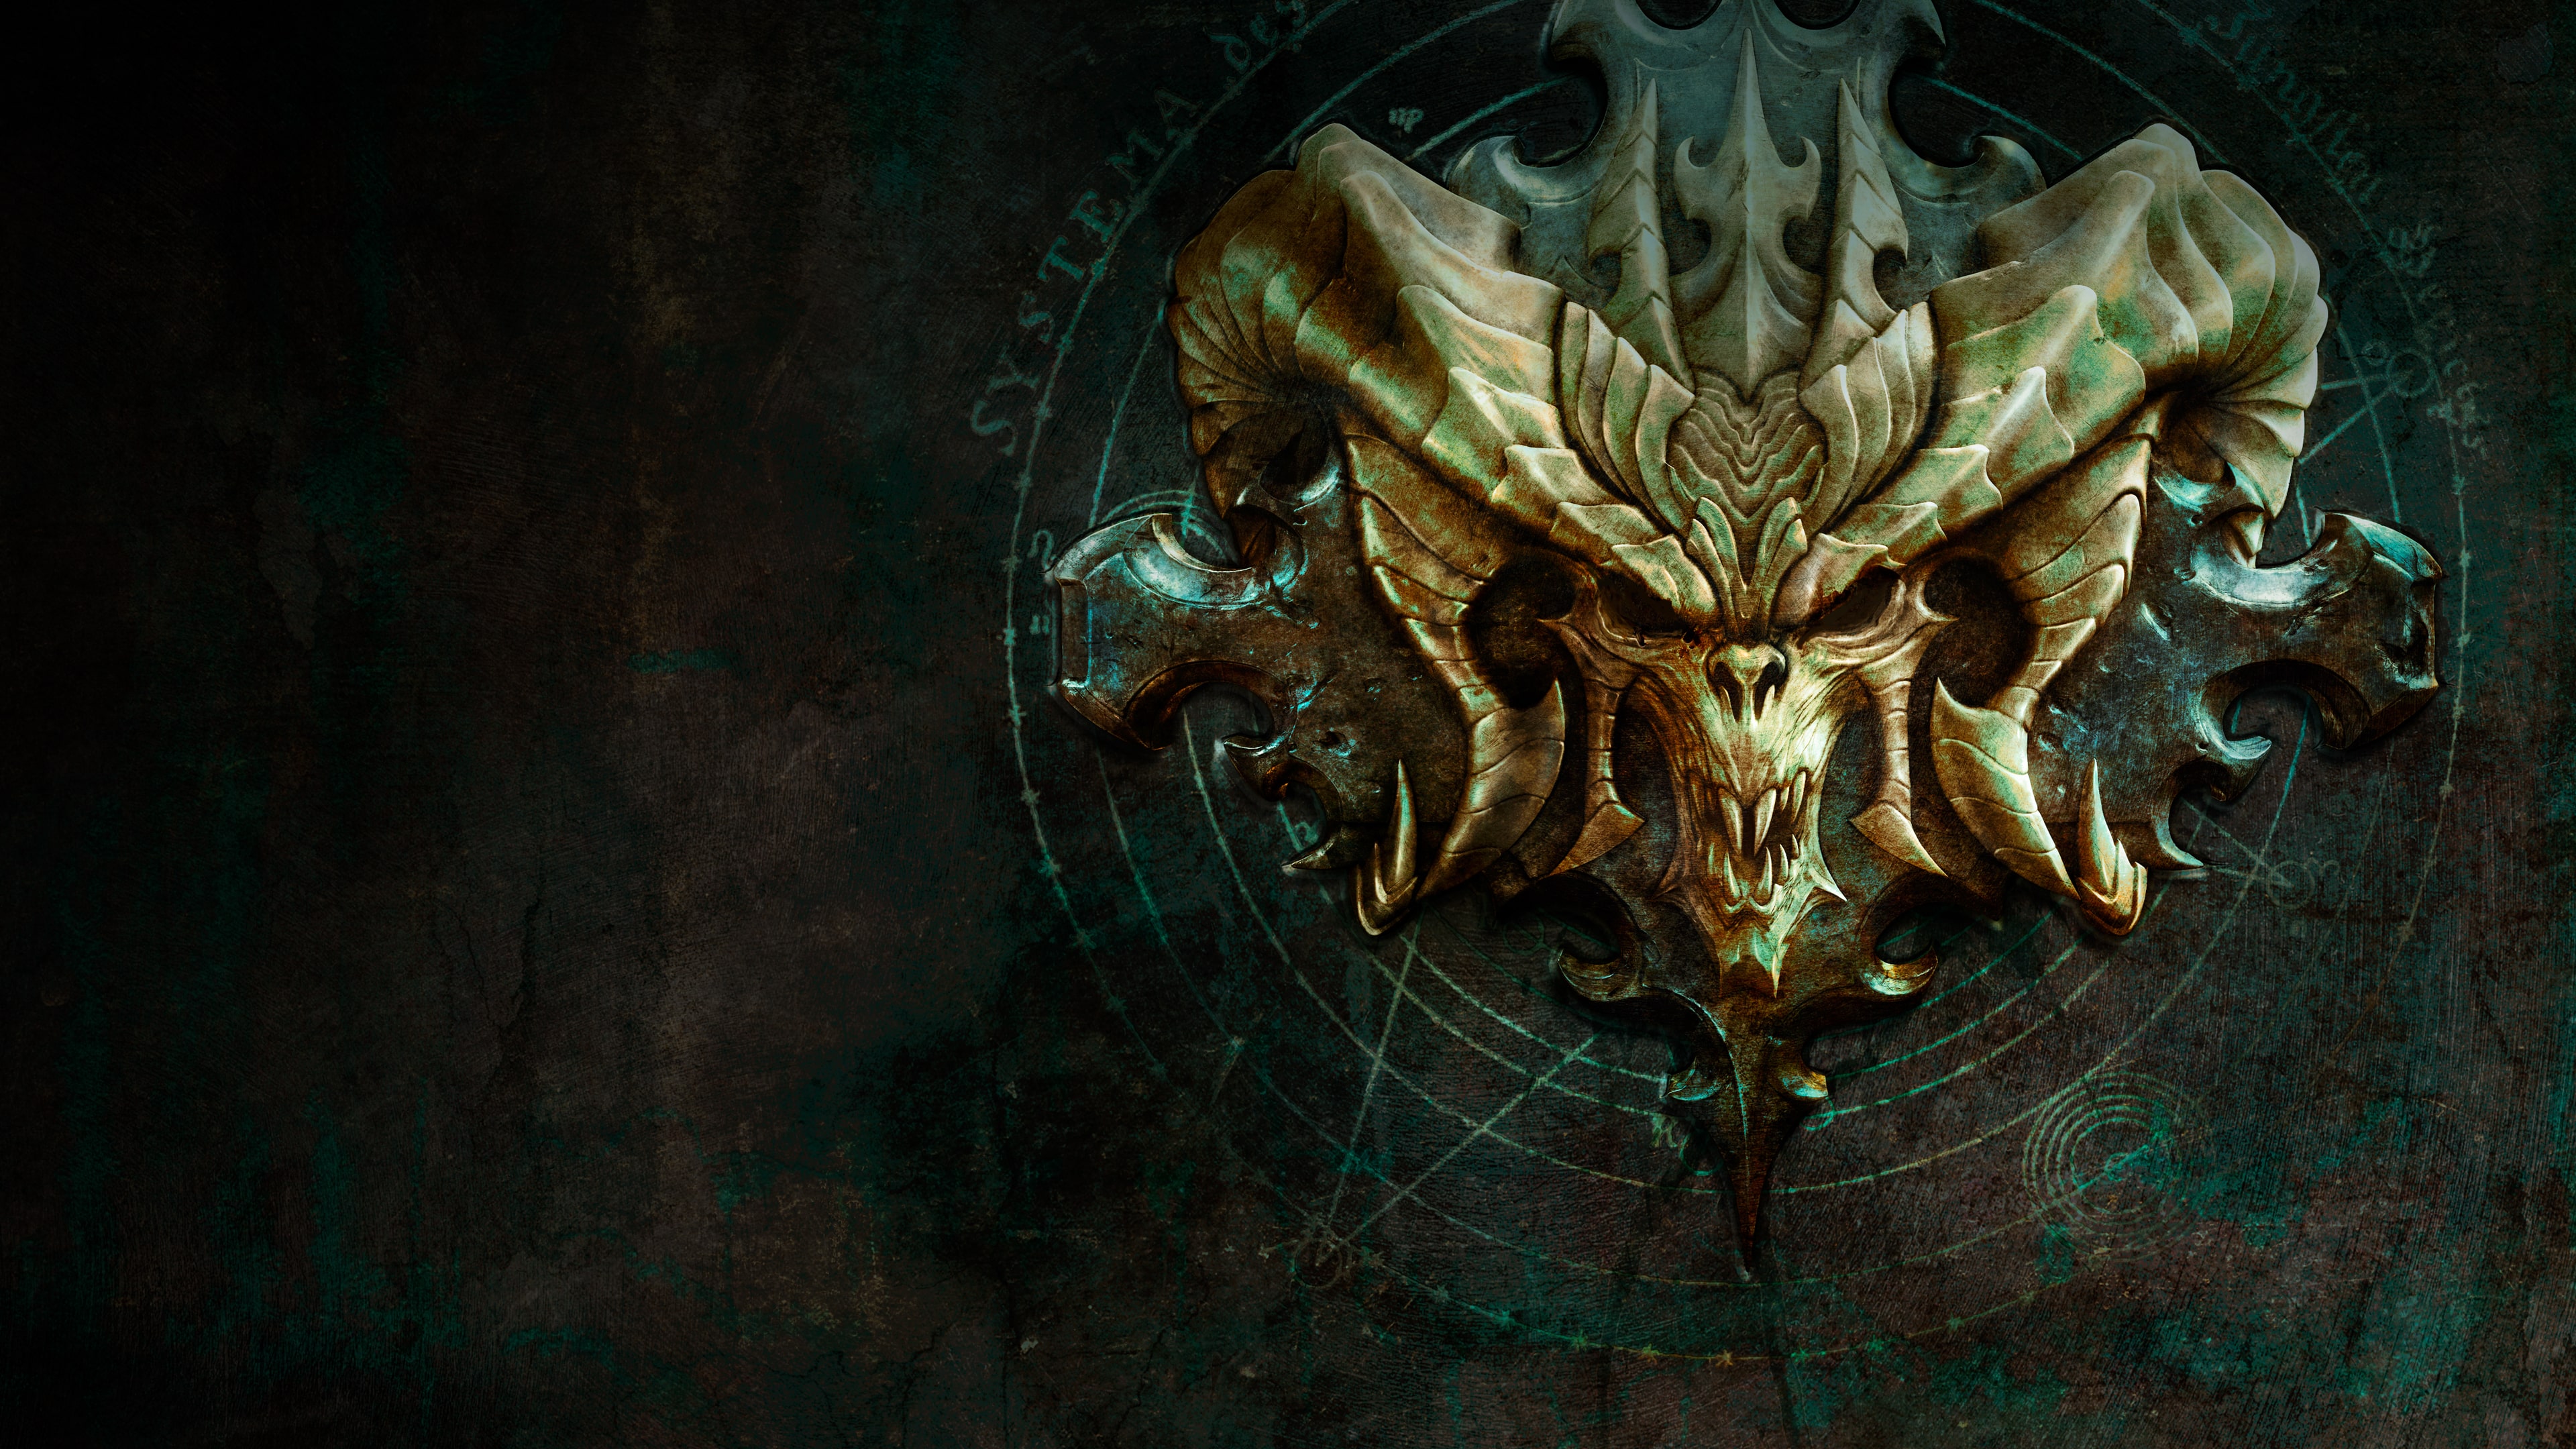 Diablo III : Le retour du nécromancien